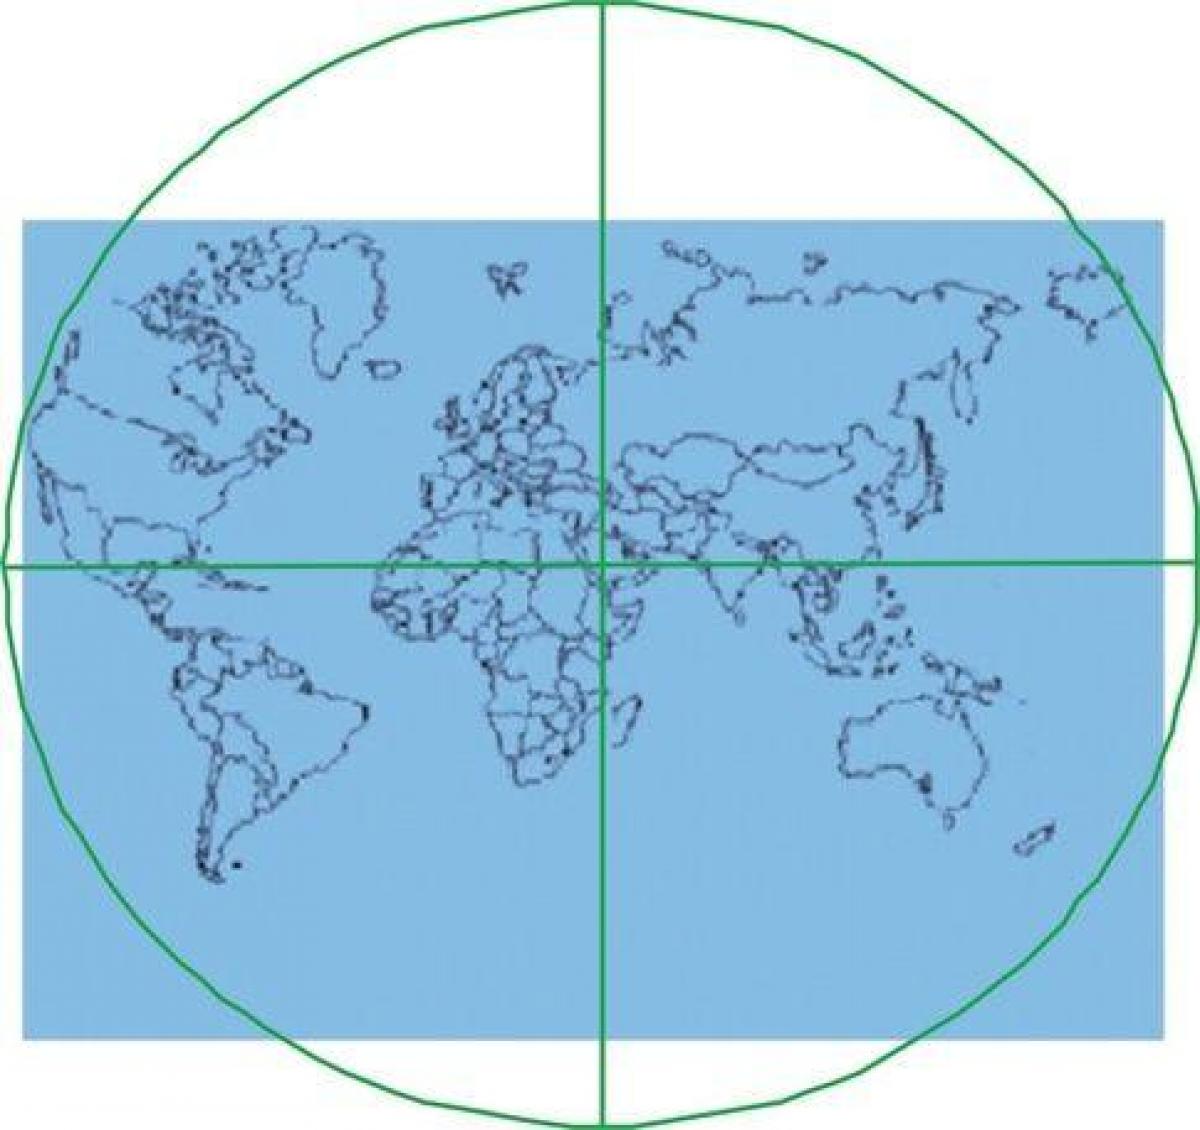 χάρτης της Κάαμπα βρίσκεται στο κέντρο του κόσμου 